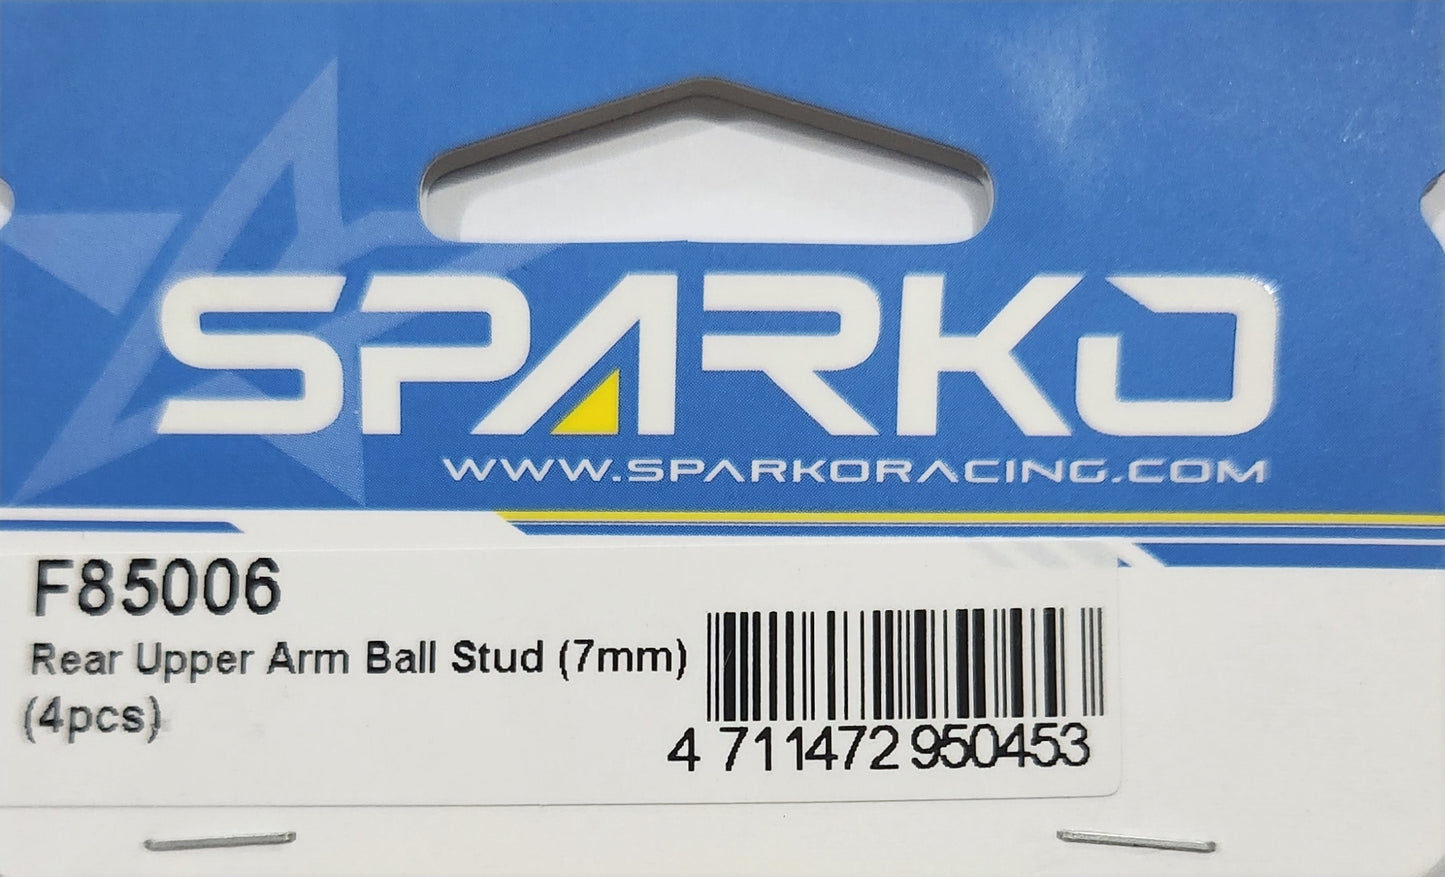 Sparko Racing Rear Upper Arm Ball Stud (7mm) (4pcs)